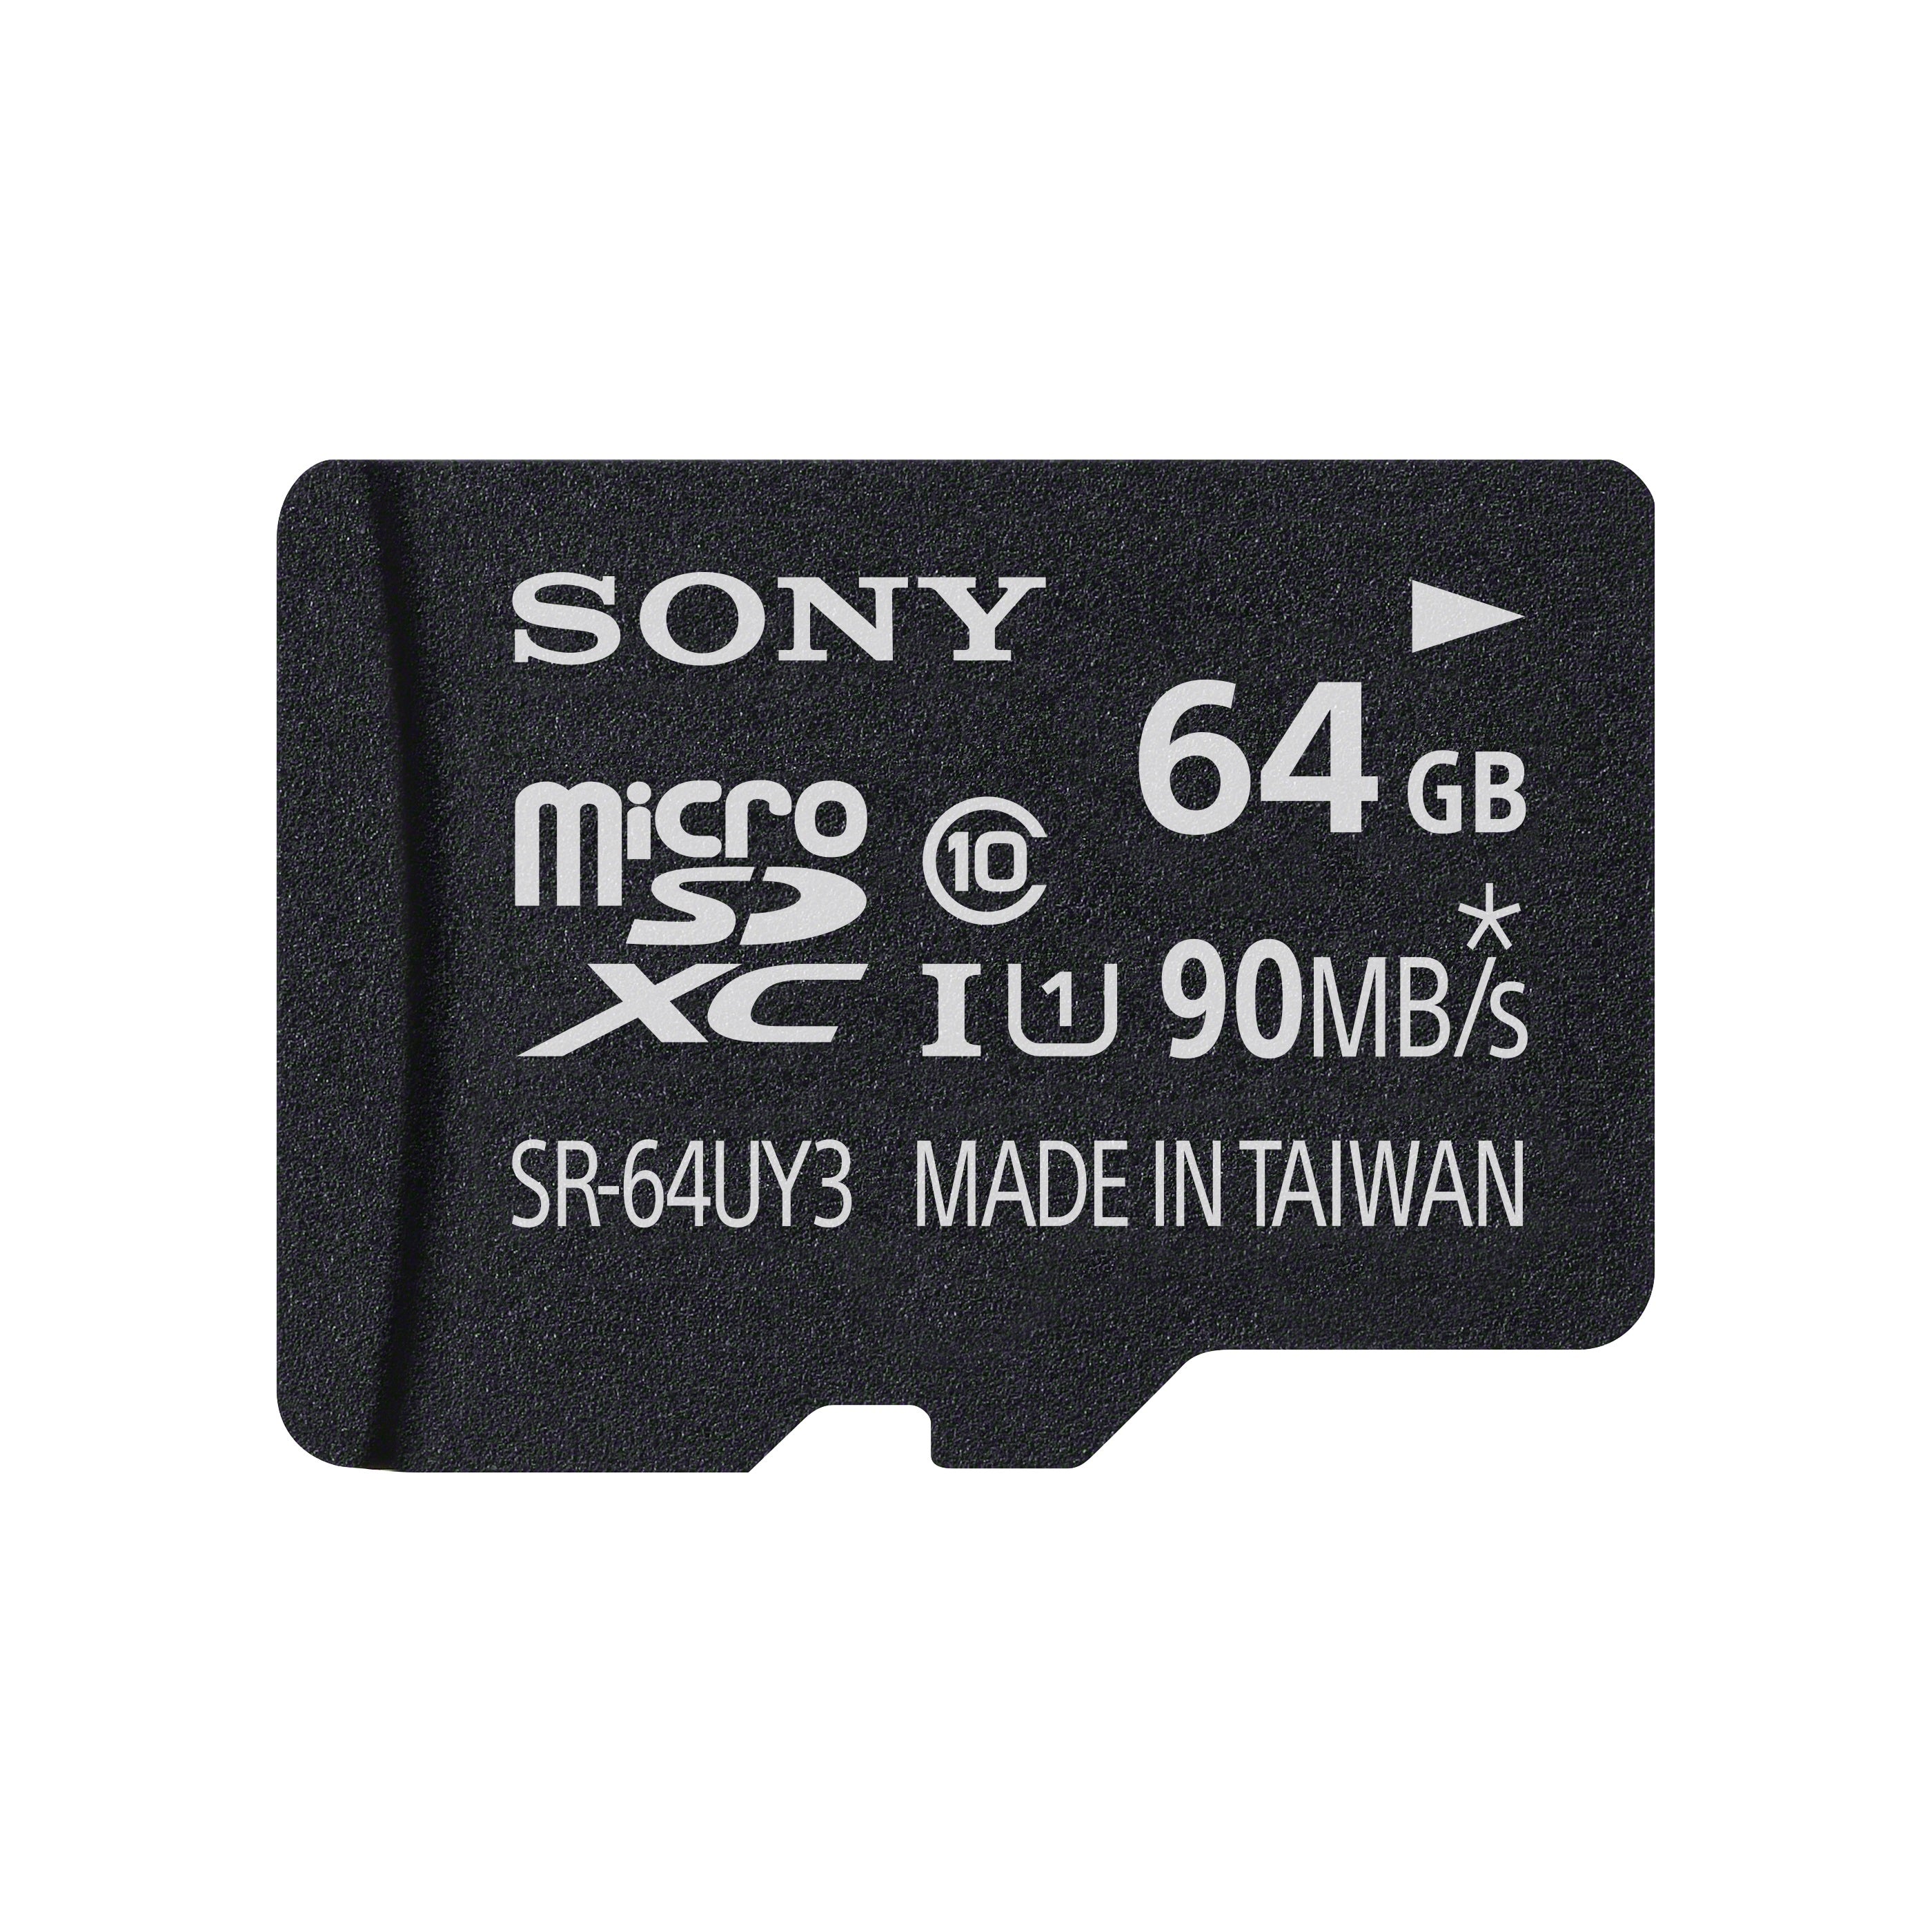 64 GB Memory card - SR-64UY